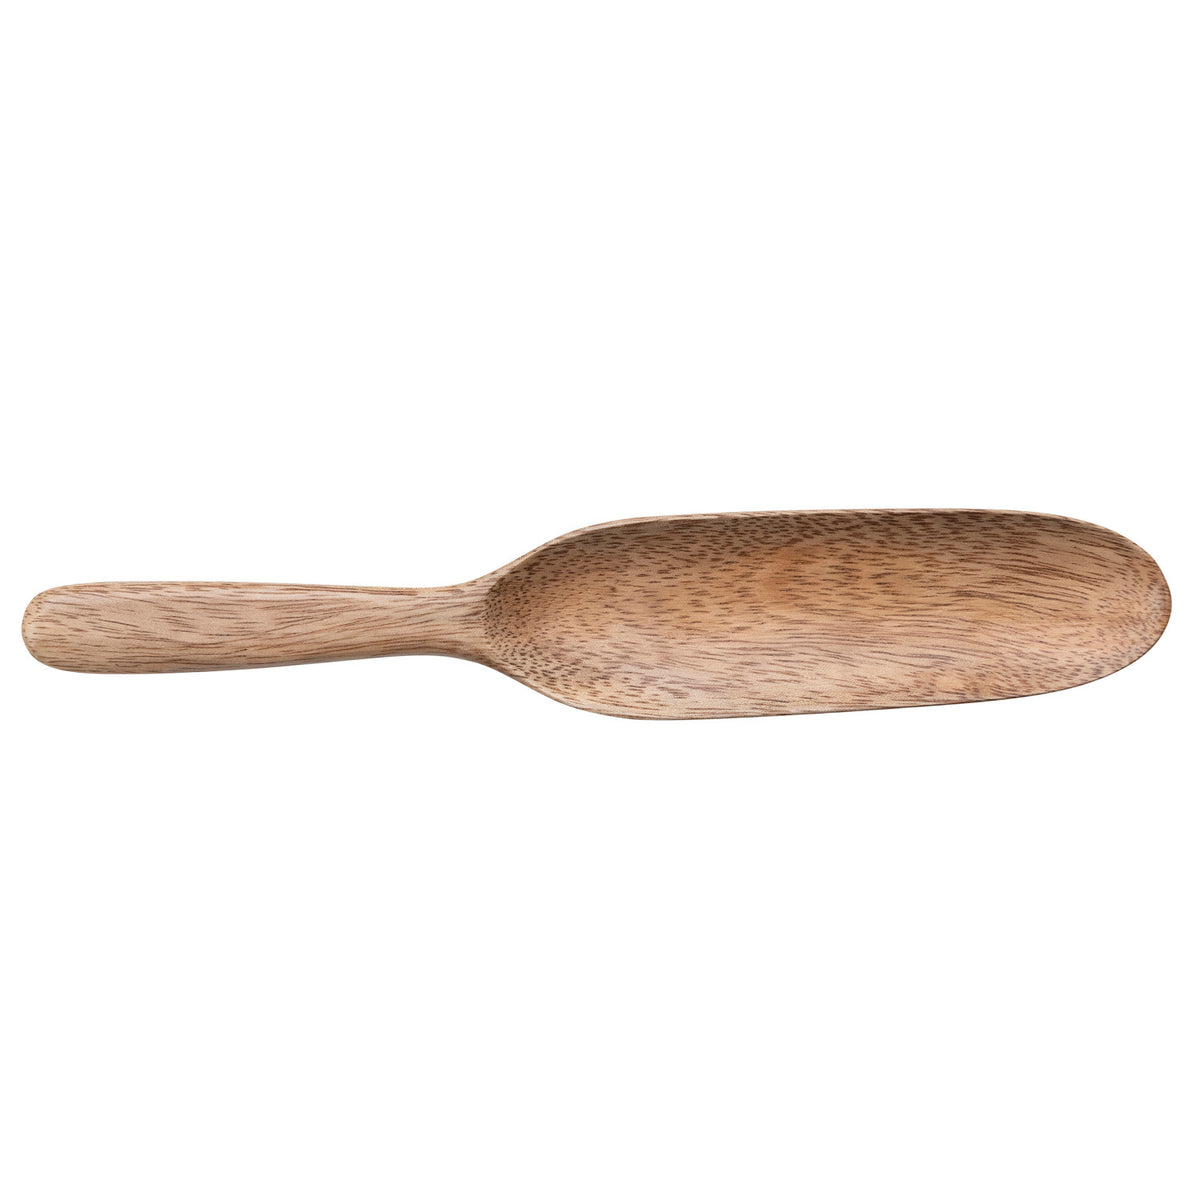 10"L Acacia Wood Spoon